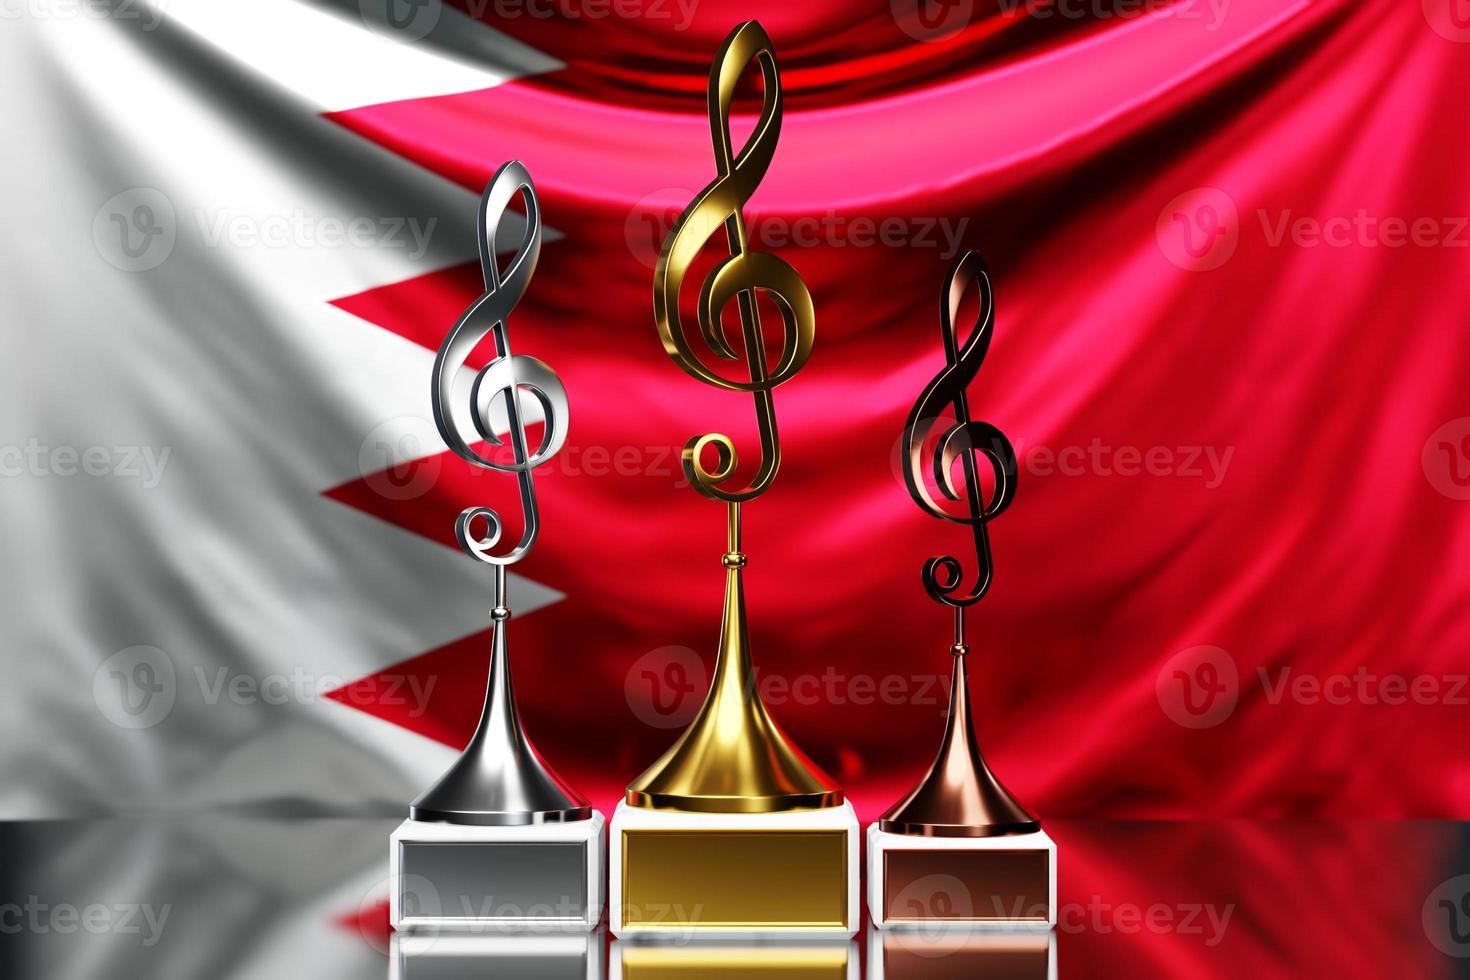 premios treble clef por ganar el premio de música en el contexto de la bandera nacional de bahrein, ilustración 3d. foto